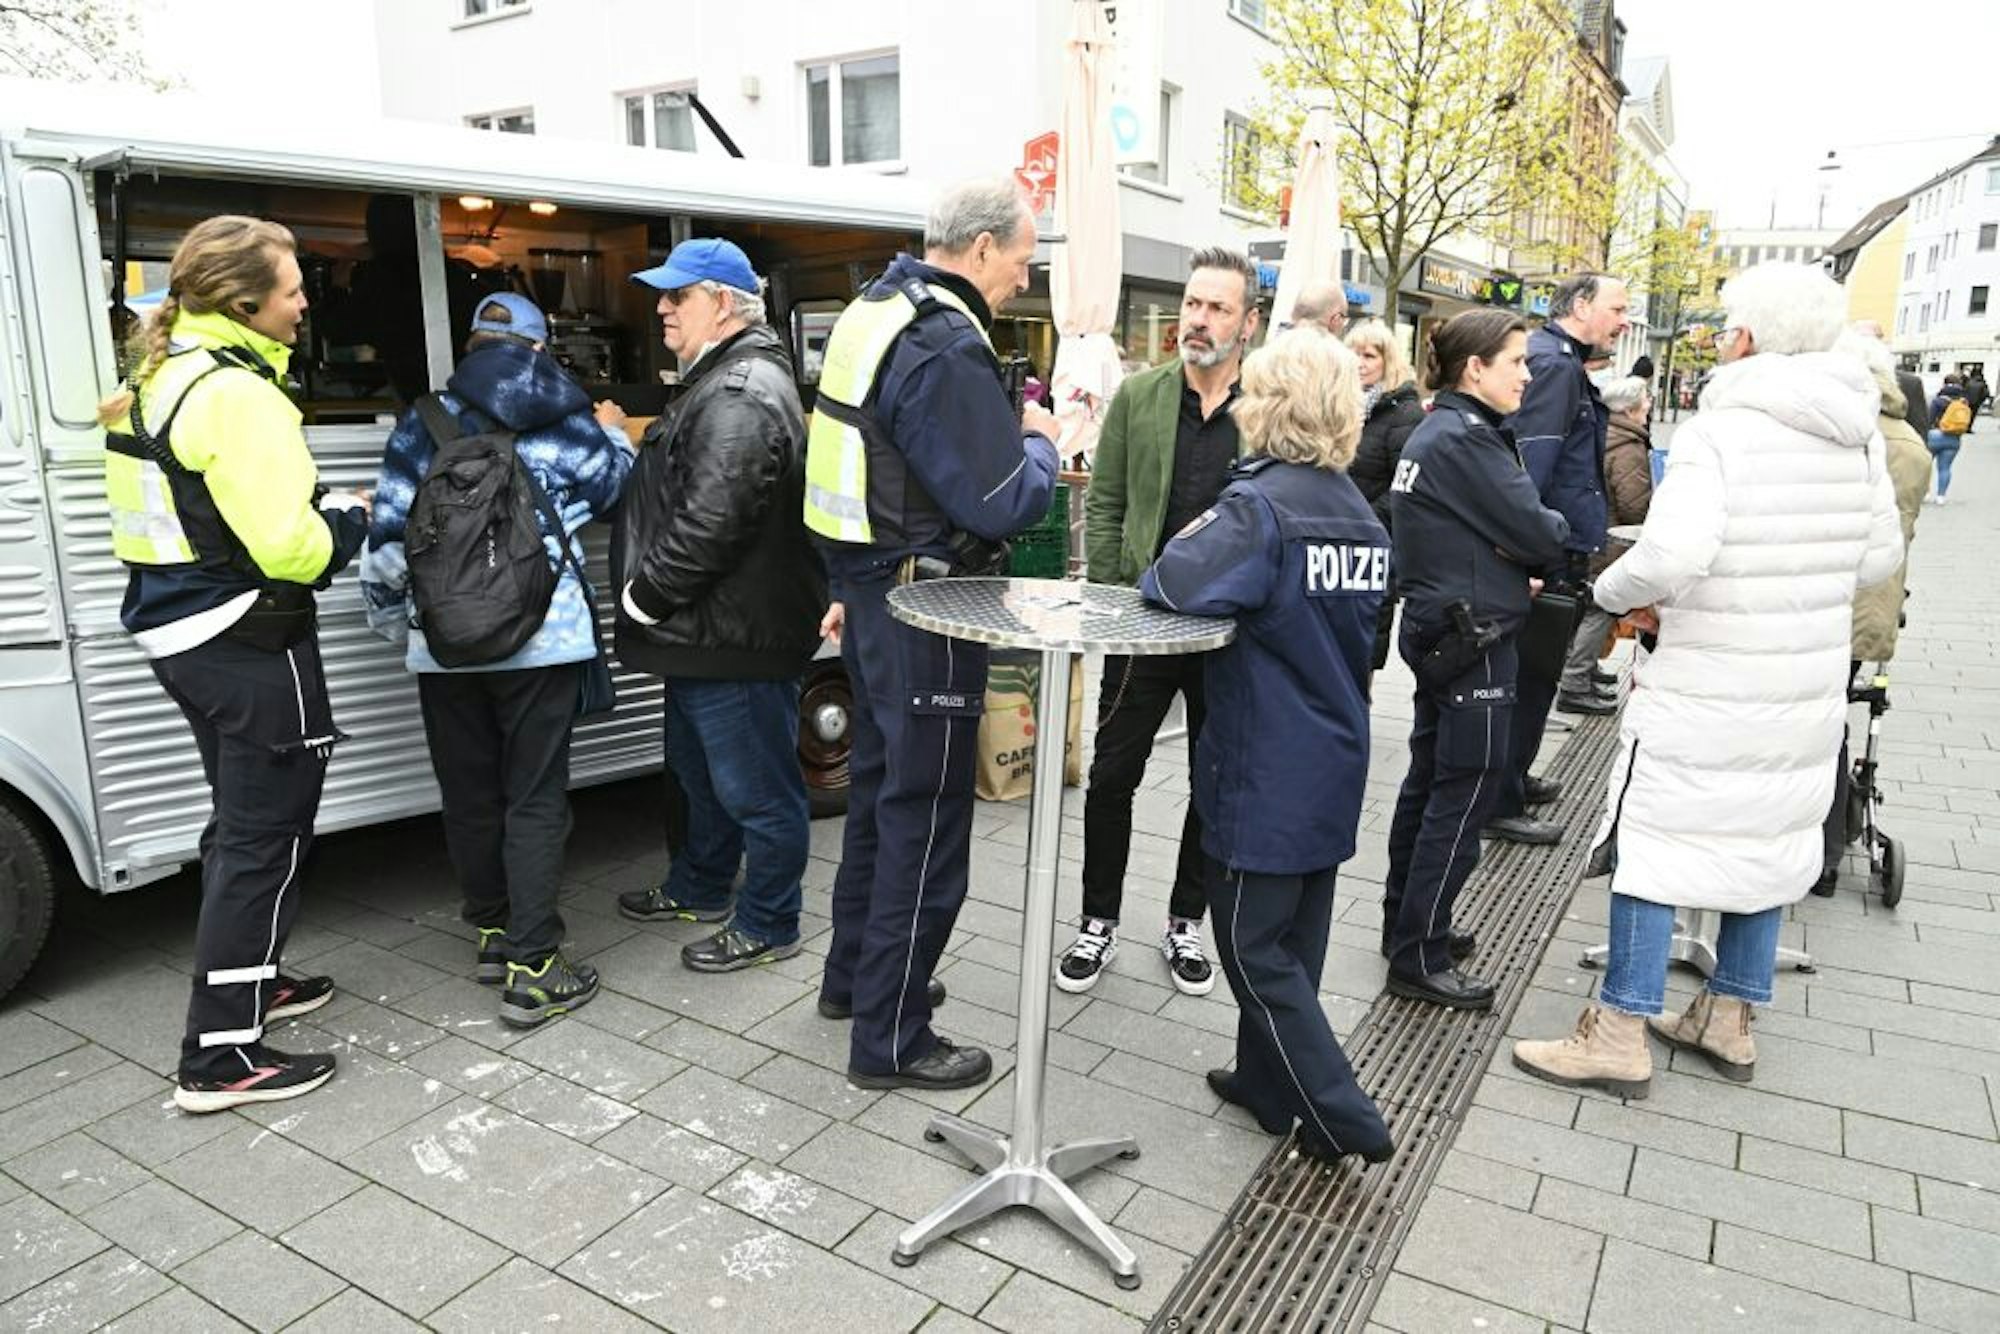 NRW-Innenminister Herbert Reul (linkes Bild, l.) im Gespräch mit Helga Henk (r.) und Claudia Kammann. Am Café-Mobil (rechtes Bild) kamen am Mittwoch zahlreiche Bürgerinnen und Bürger mit der Polizei „auf einen Kaffee“ ins Gespräch.